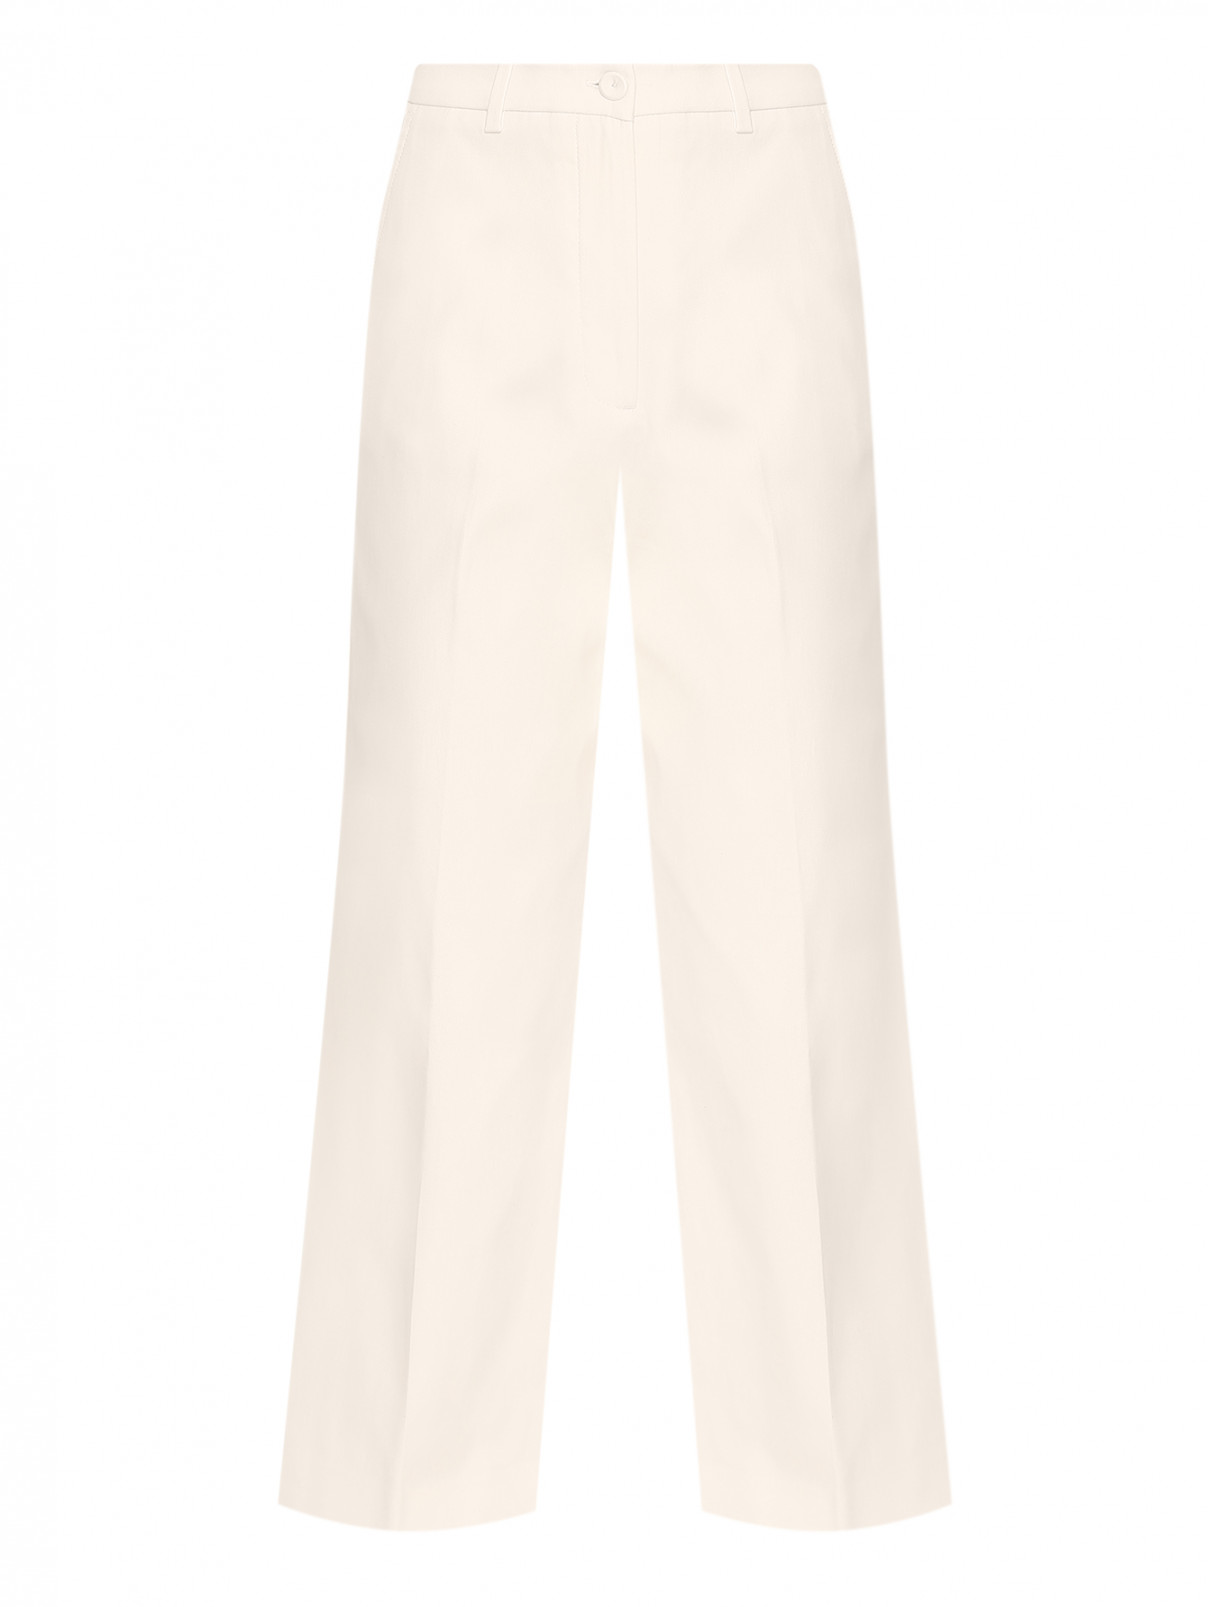 Однотонные брюки из хлопка Weekend Max Mara  –  Общий вид  – Цвет:  Бежевый